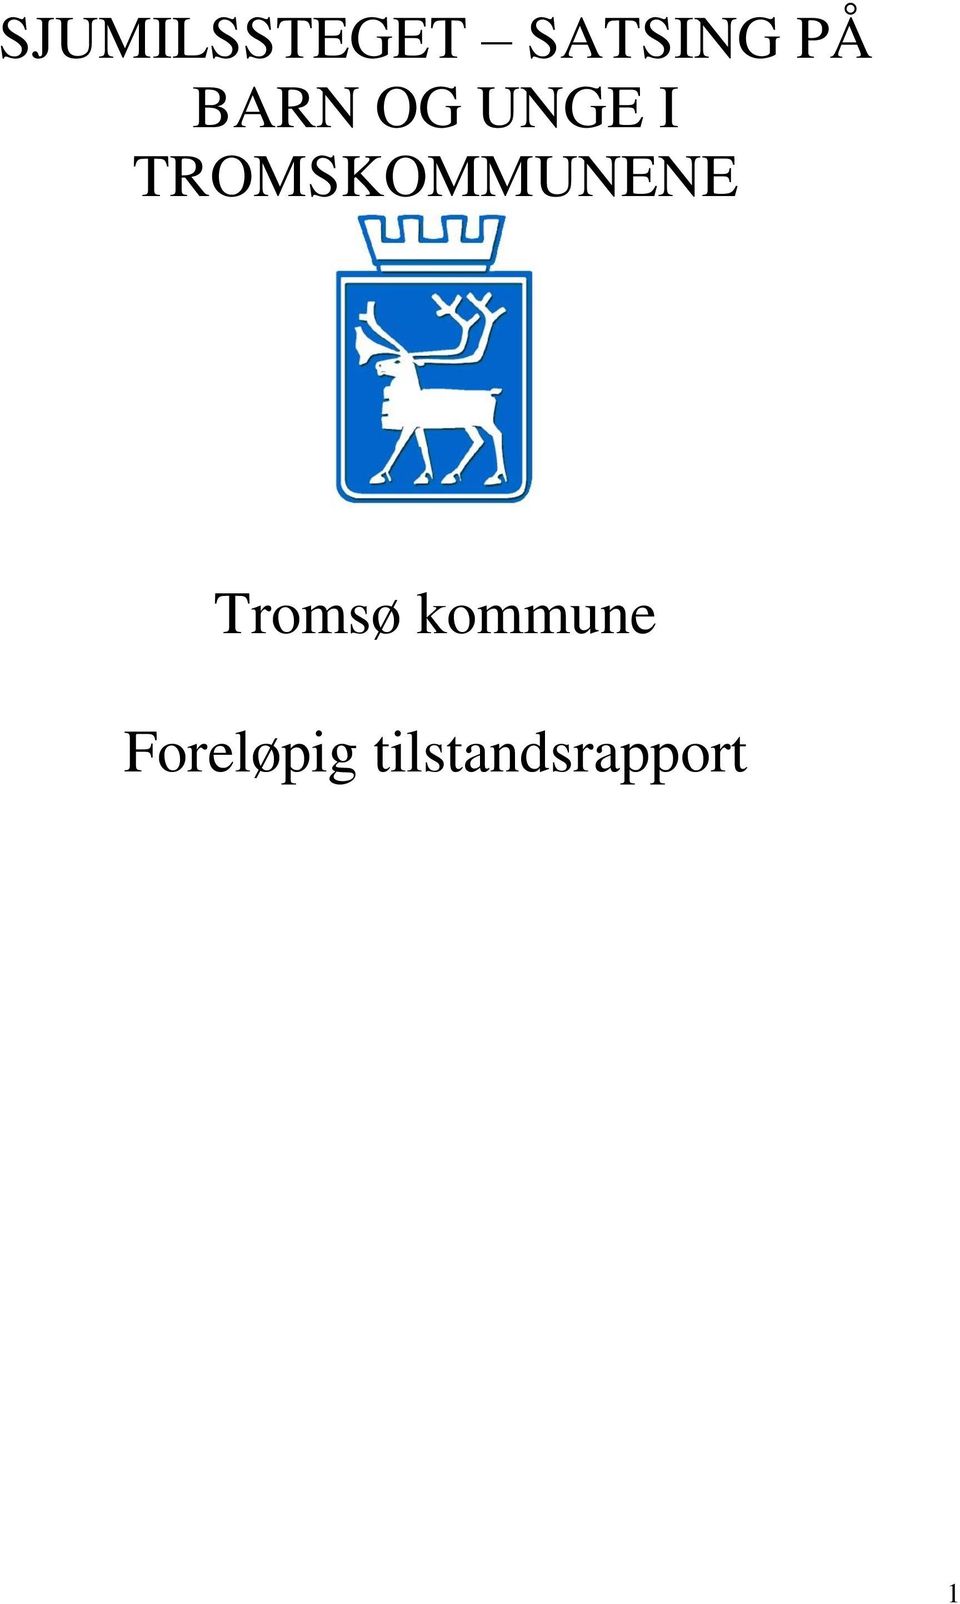 TROMSKOMMUNENE Tromsø